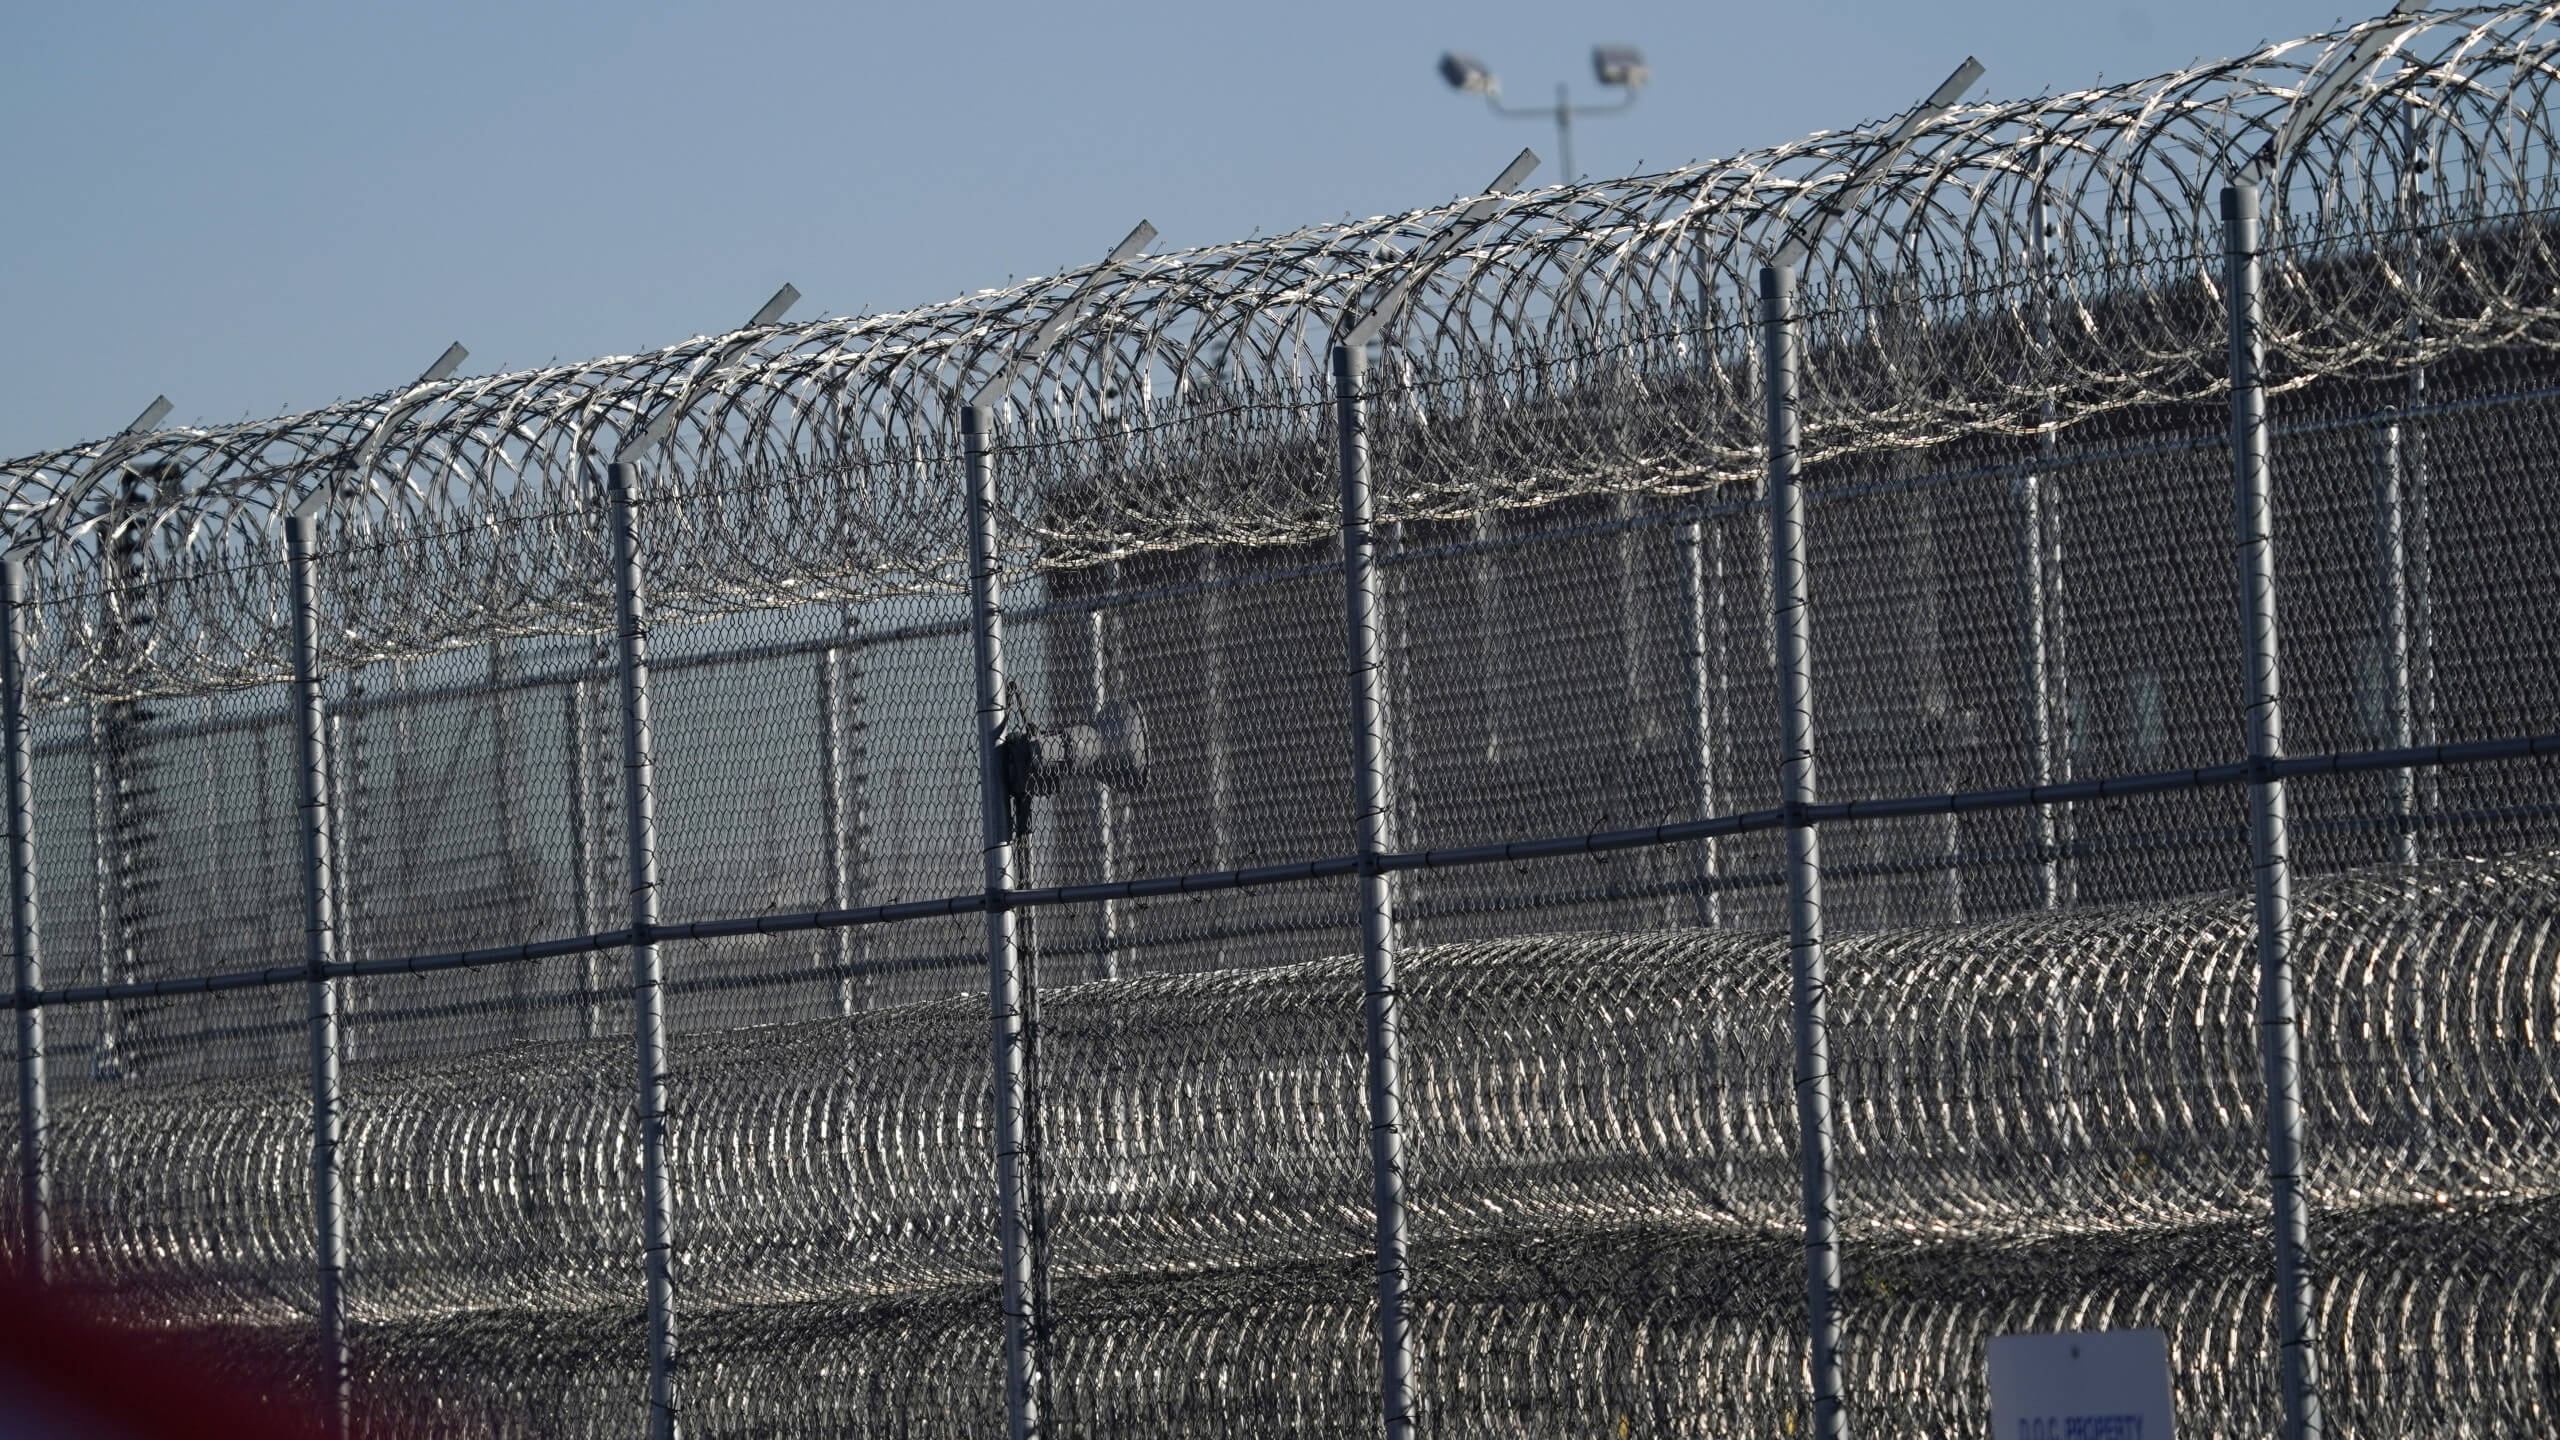 Bild eines Gefängniszauns in Denver, USA Ende 2020